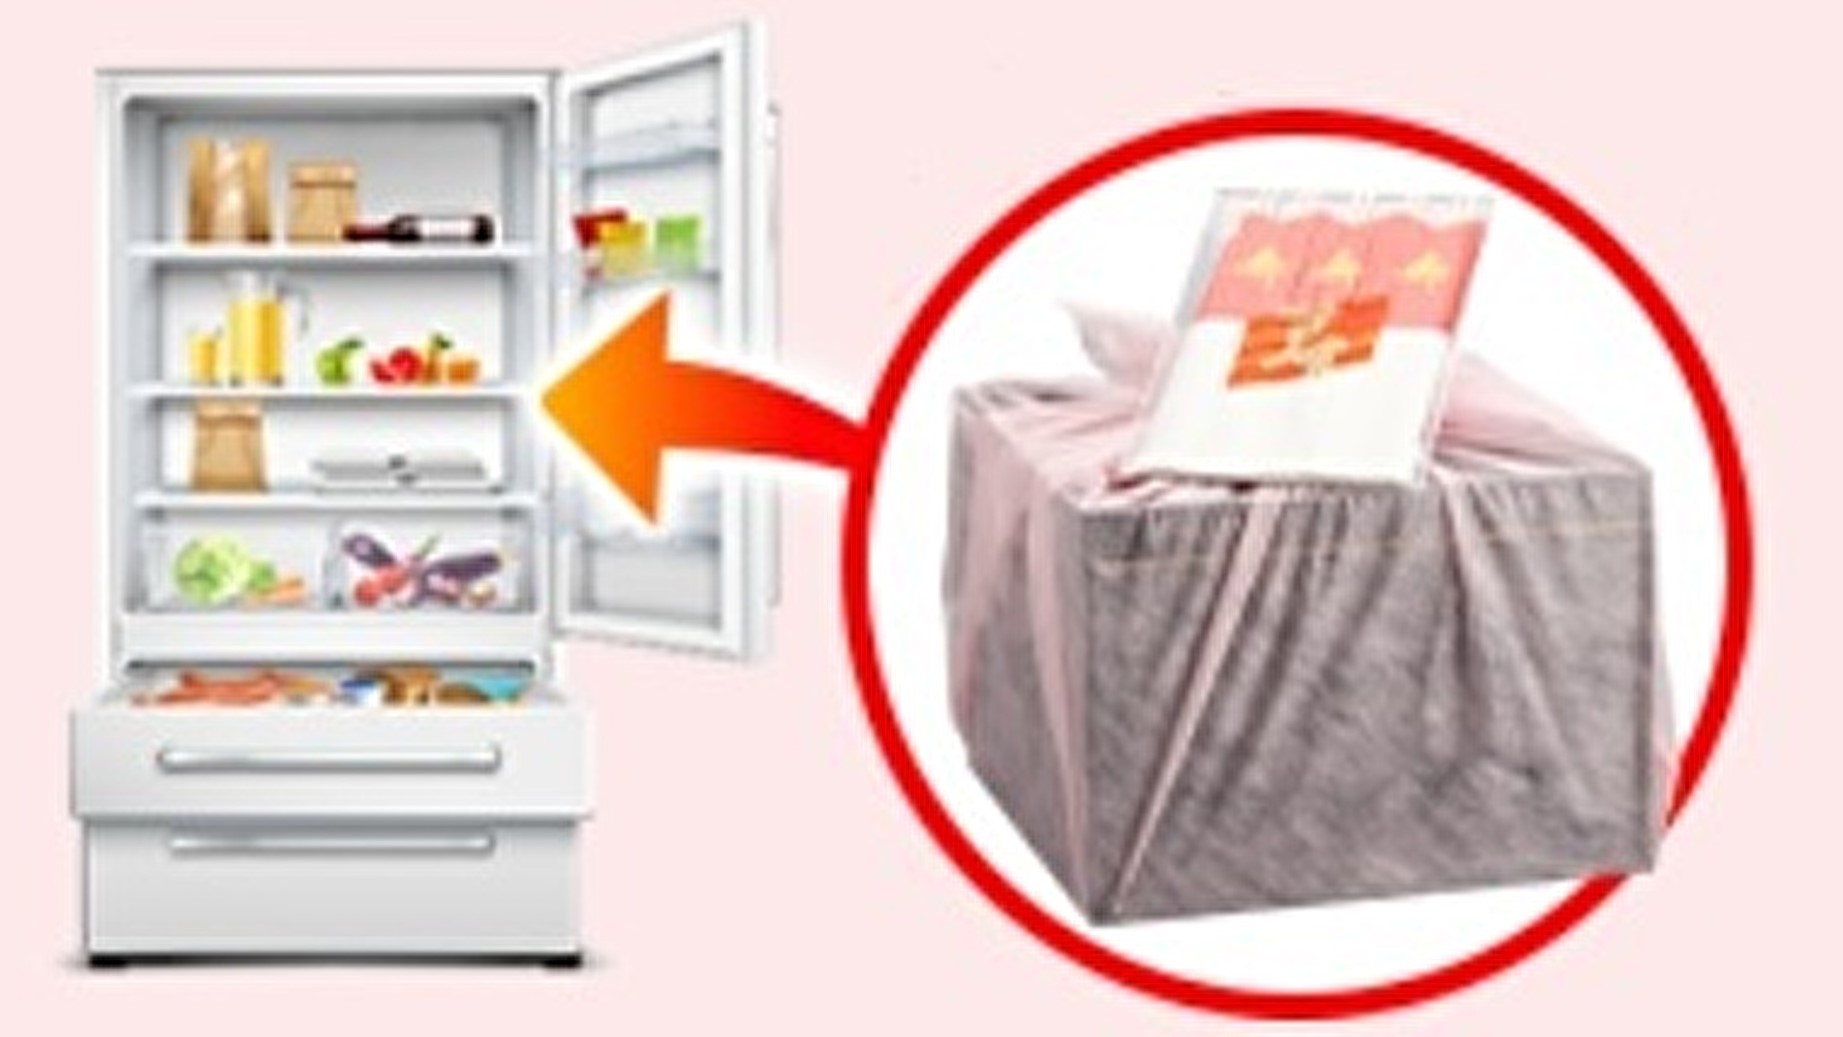 1番簡単な解凍方法。 風呂敷に包まれた重箱の状態で冷蔵庫に入れる。